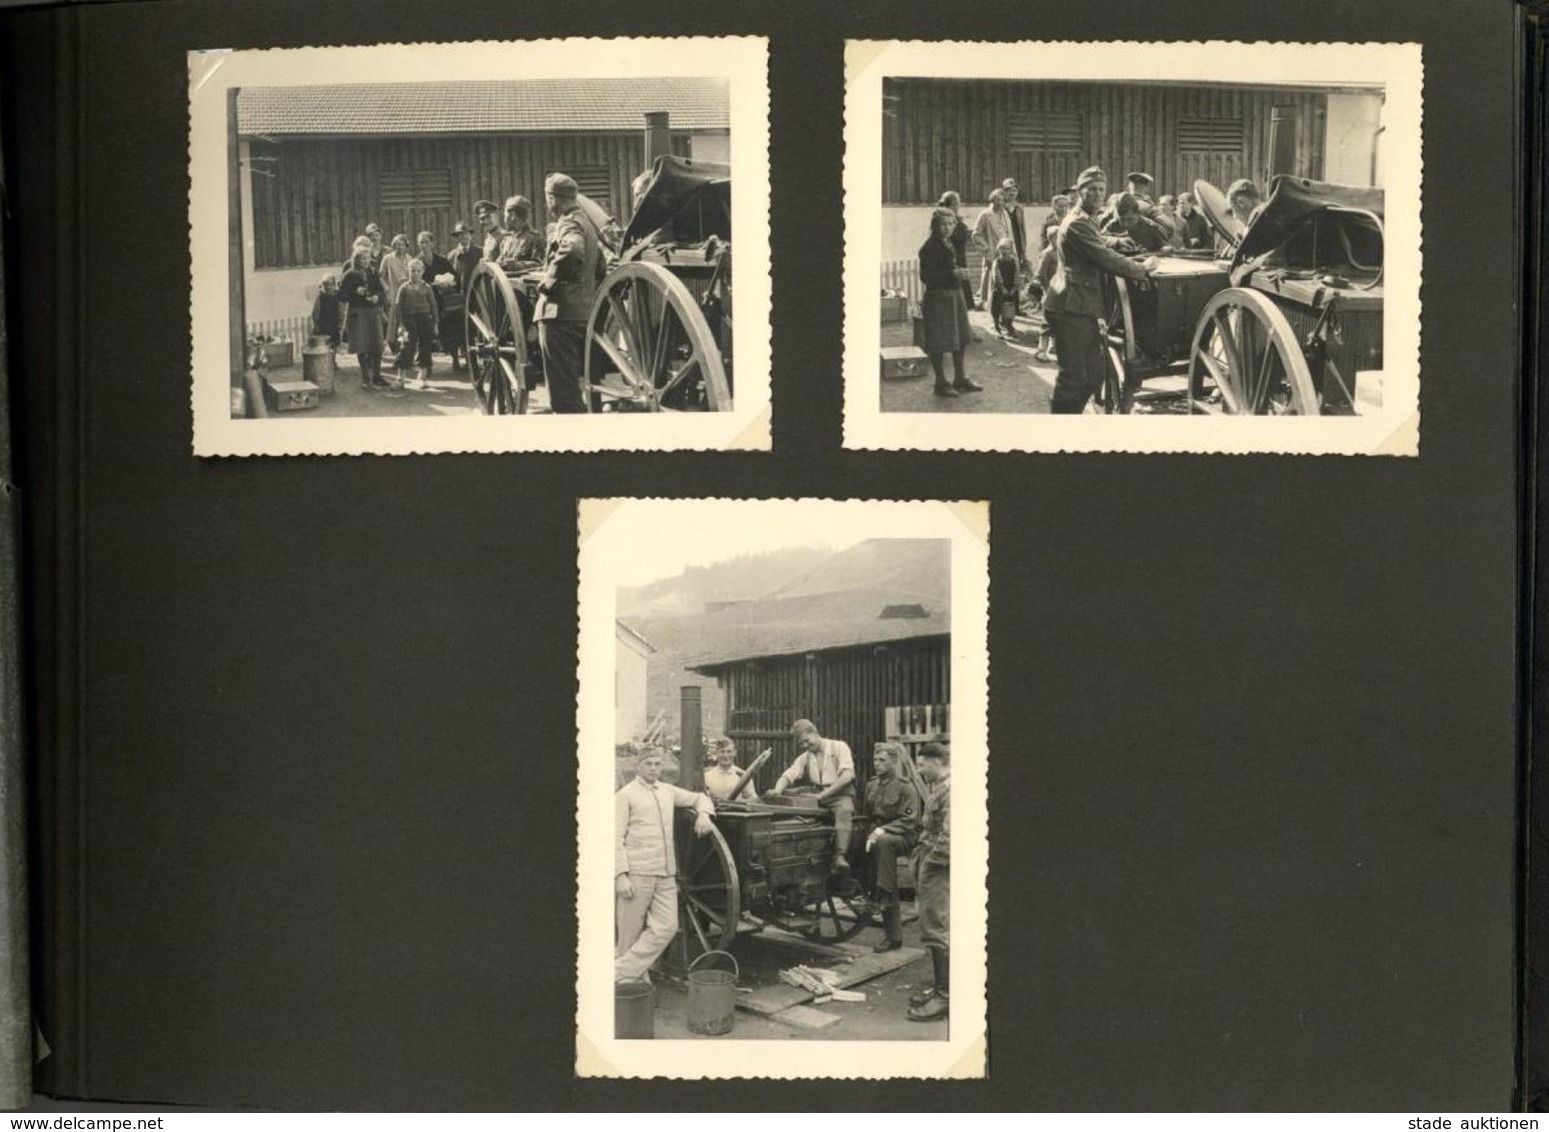 WK II Album Mit über 90 Fotos Div. Formate Ausbildung Und Einmarsch Nach Österreich I-II - War 1939-45